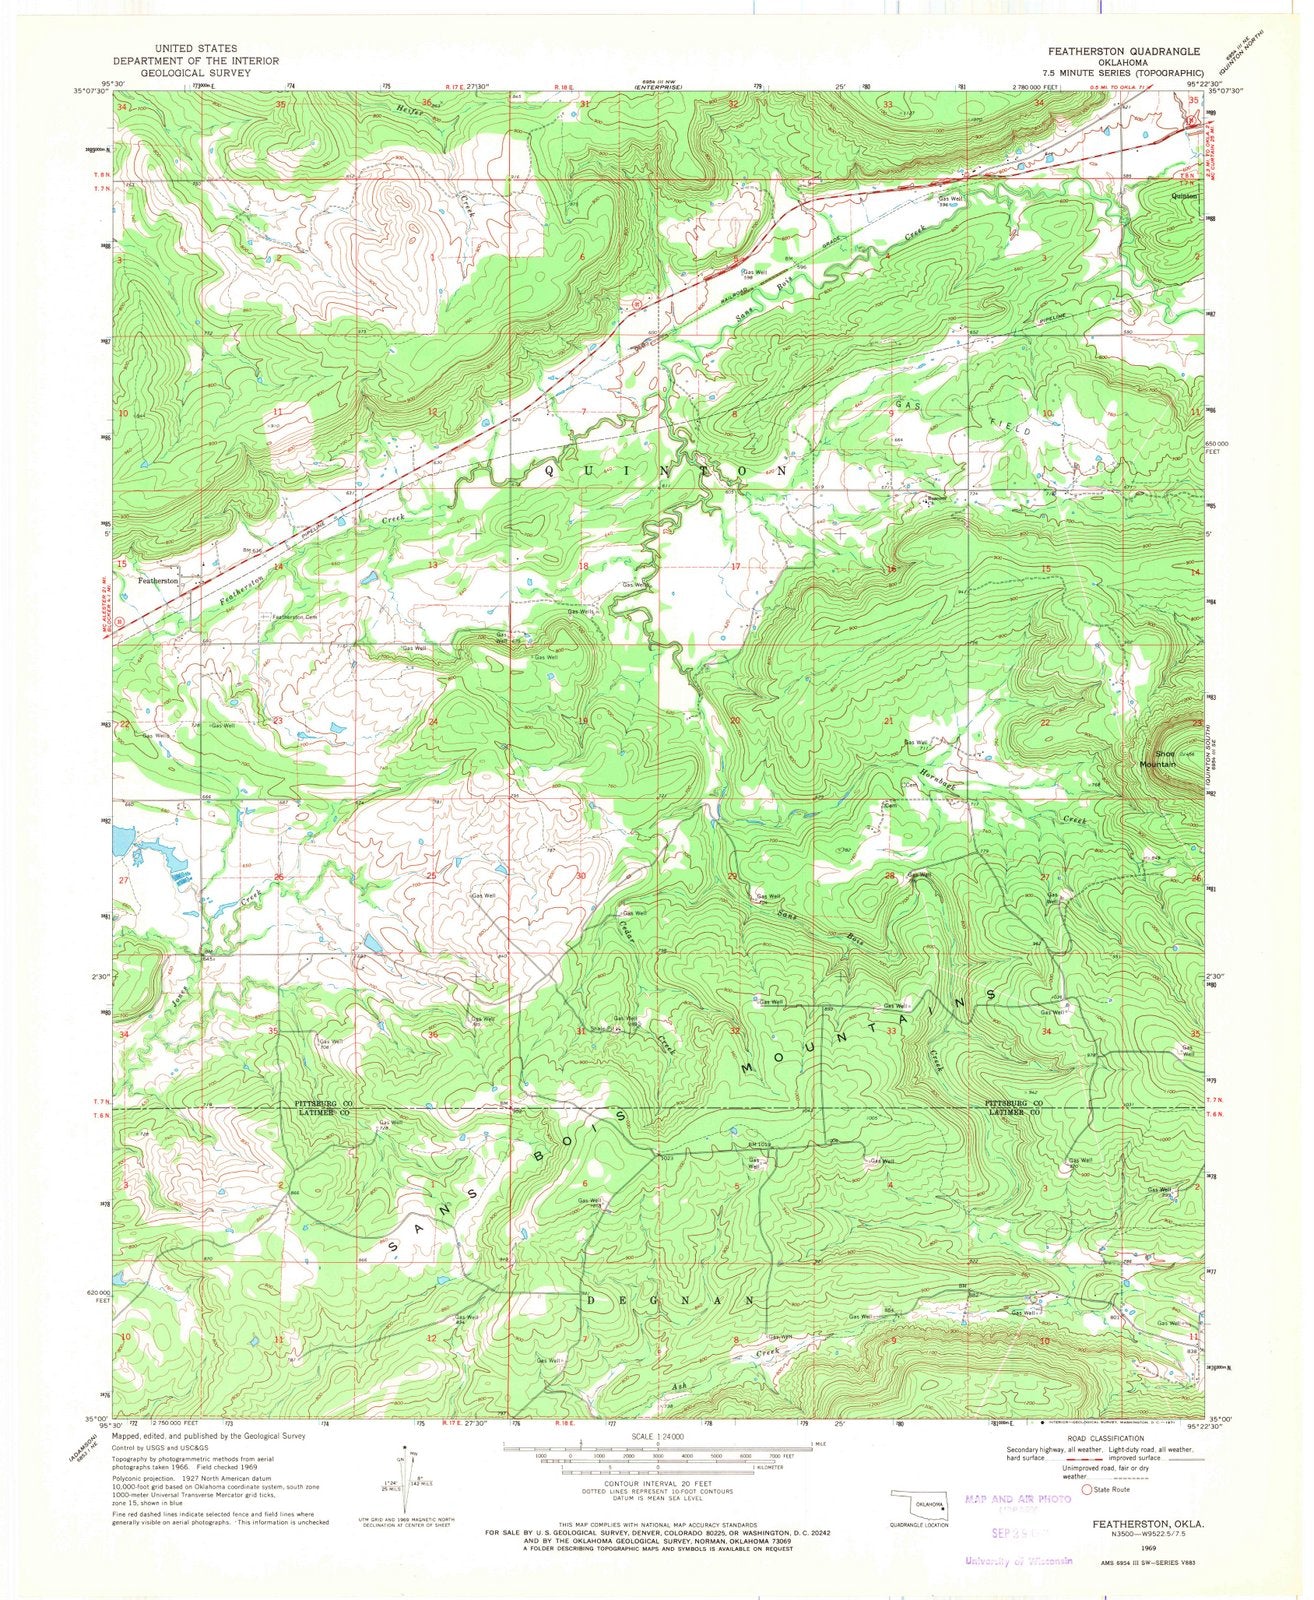 1969 Featherston, OK - Oklahoma - USGS Topographic Map